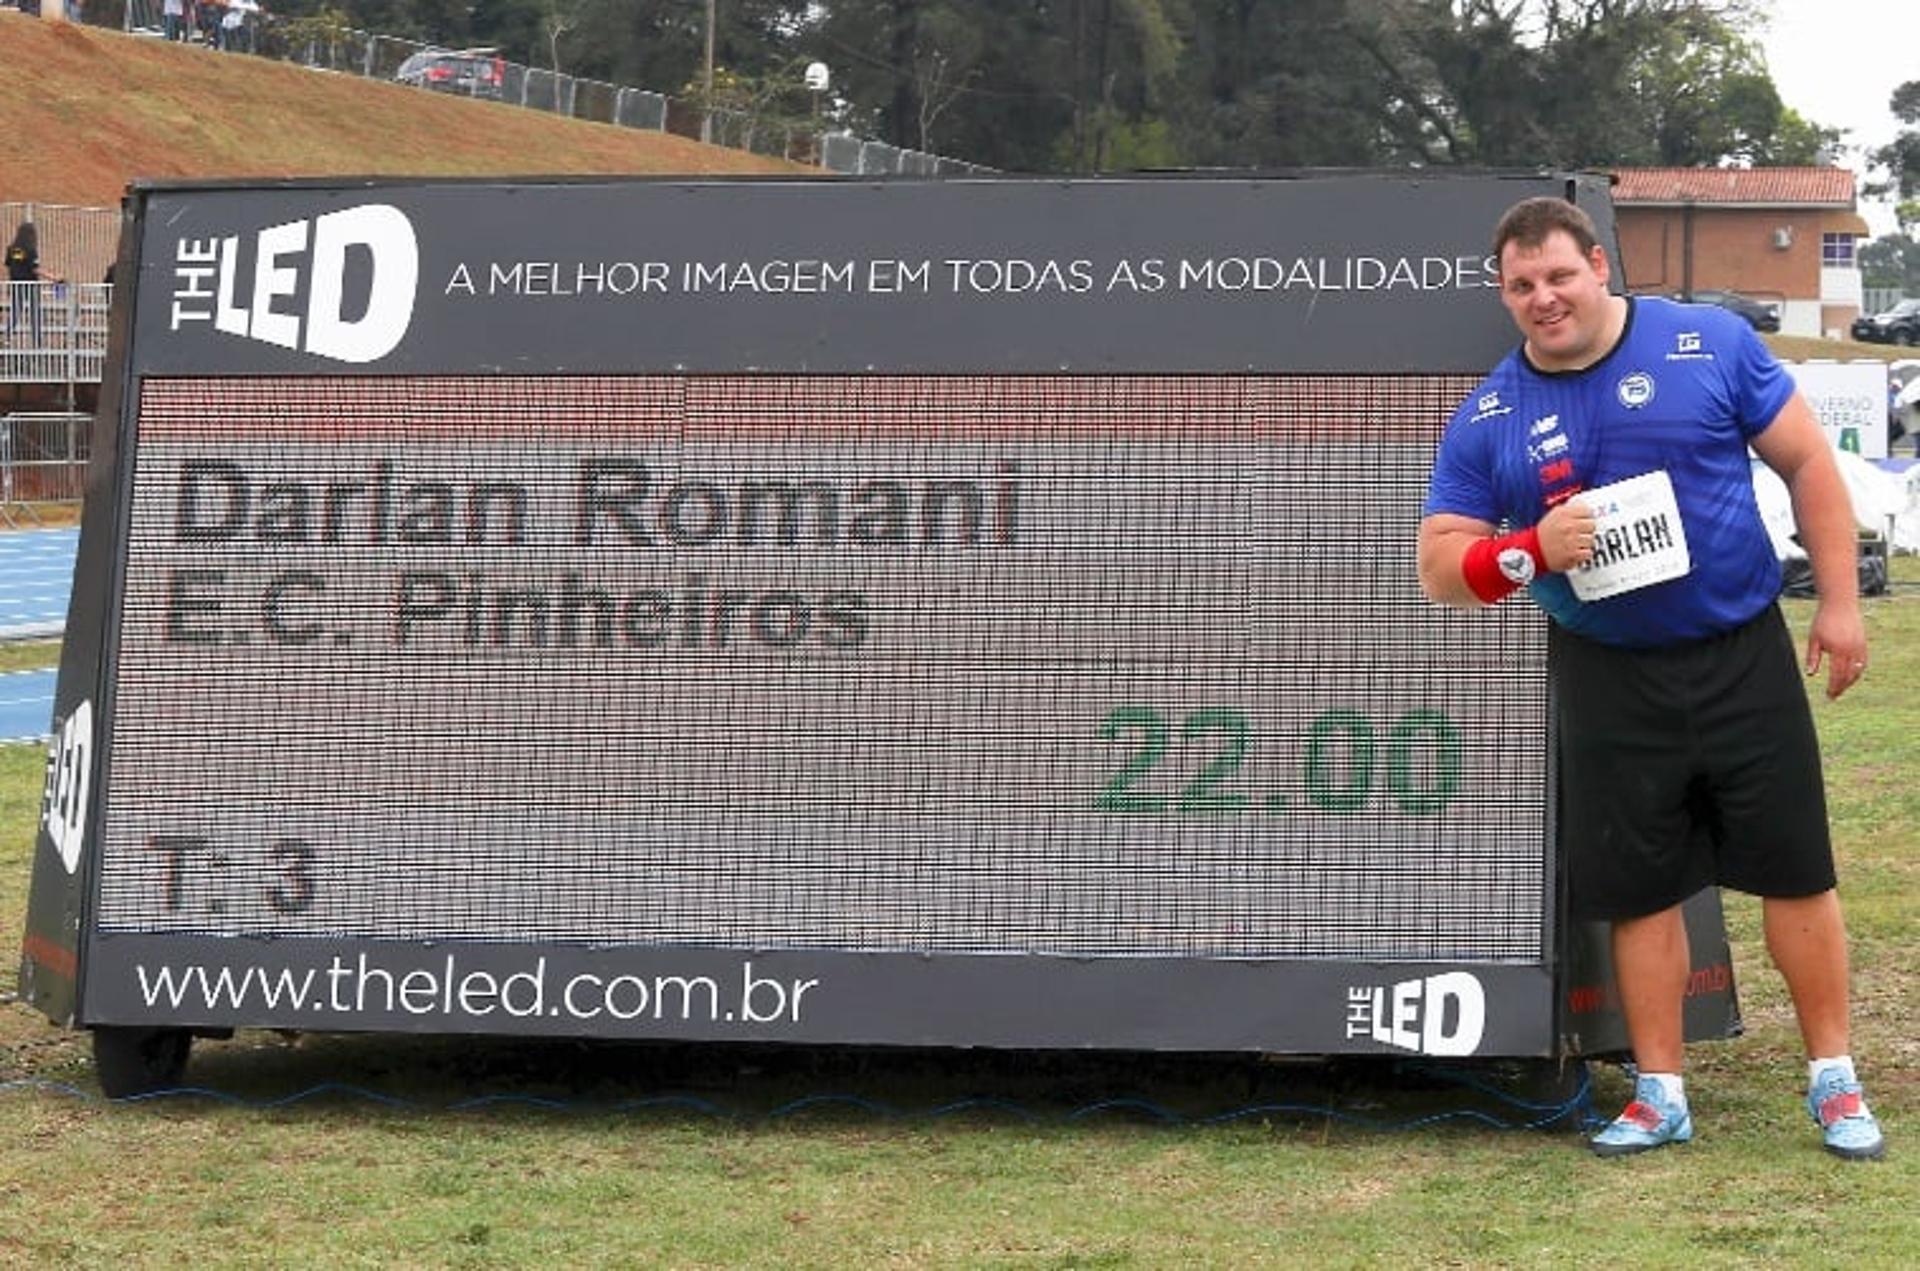 Darlan Romani supera os 22 metros no arremesso do peso e quebra recorde sul-americano